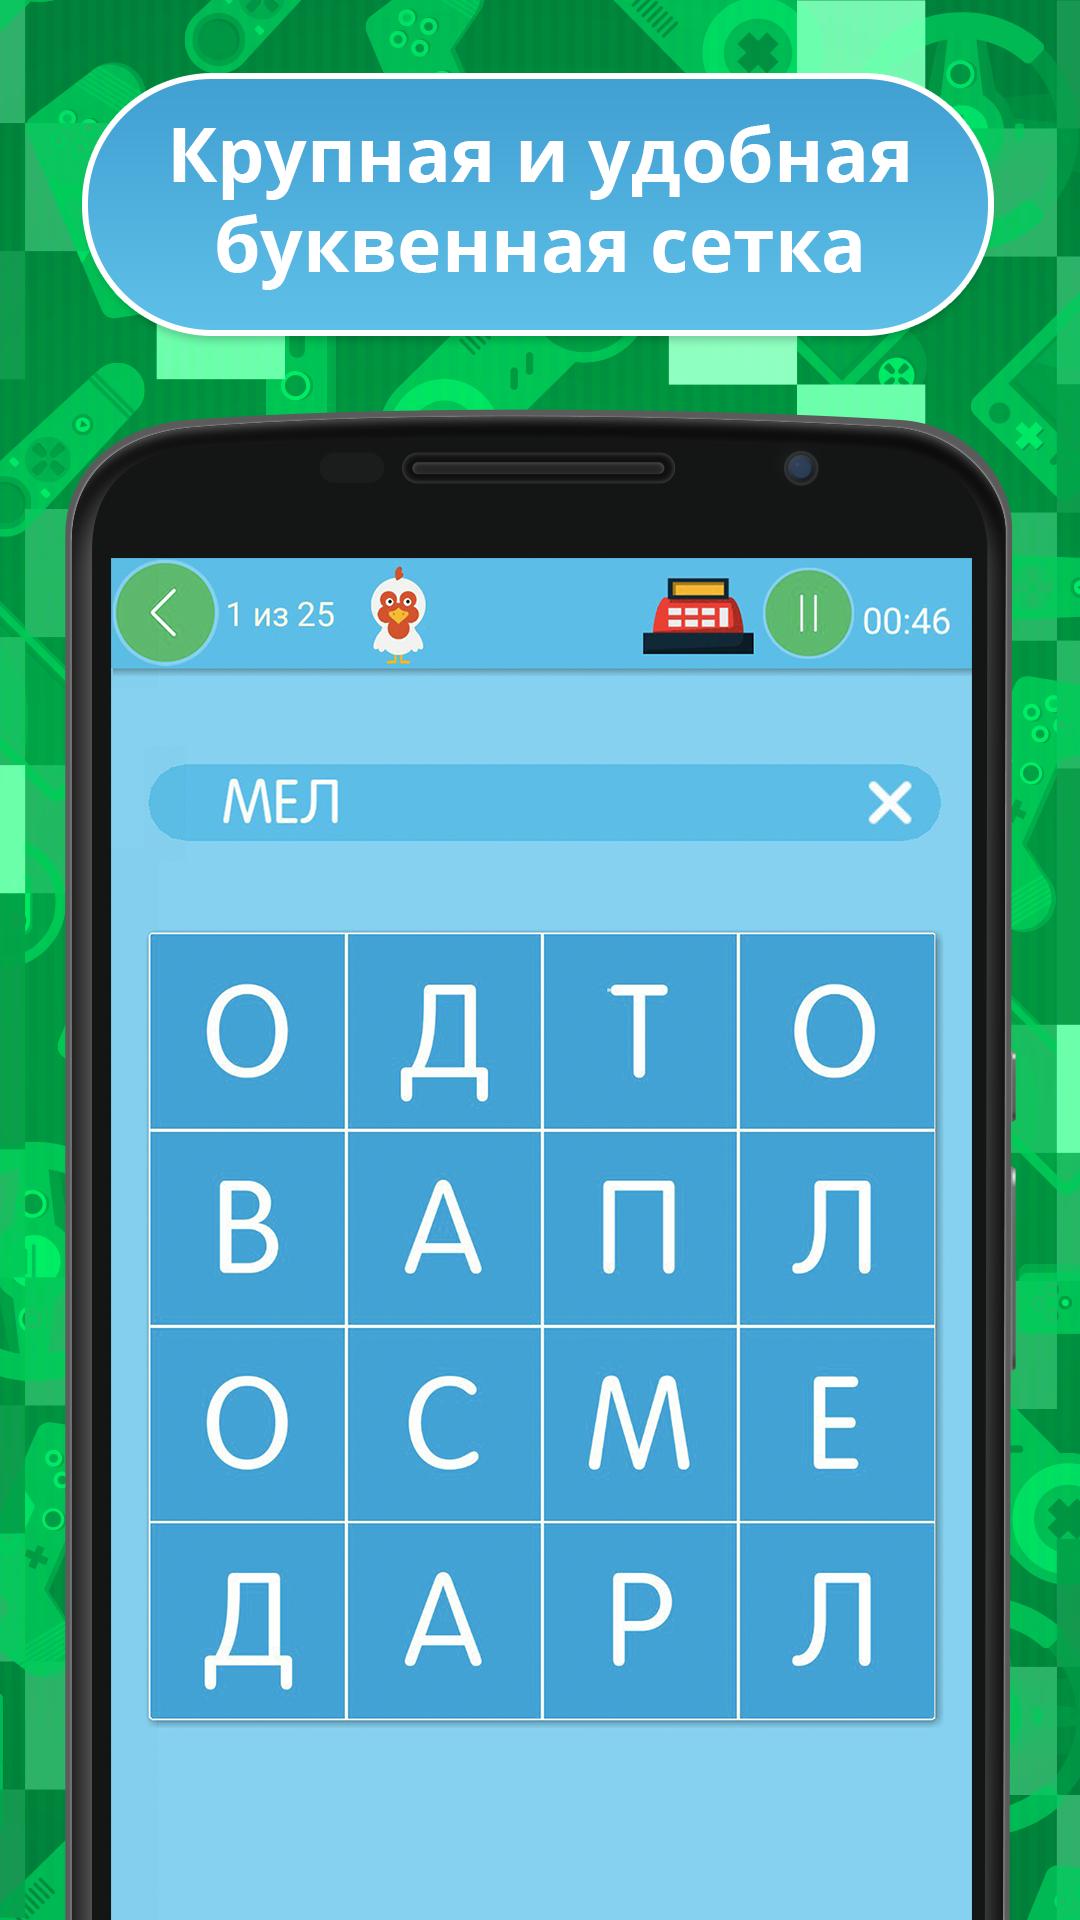 Тогда отгадай. Филворды. Игра Угадай слово Филворды. Филворд на андроид на русском языке.